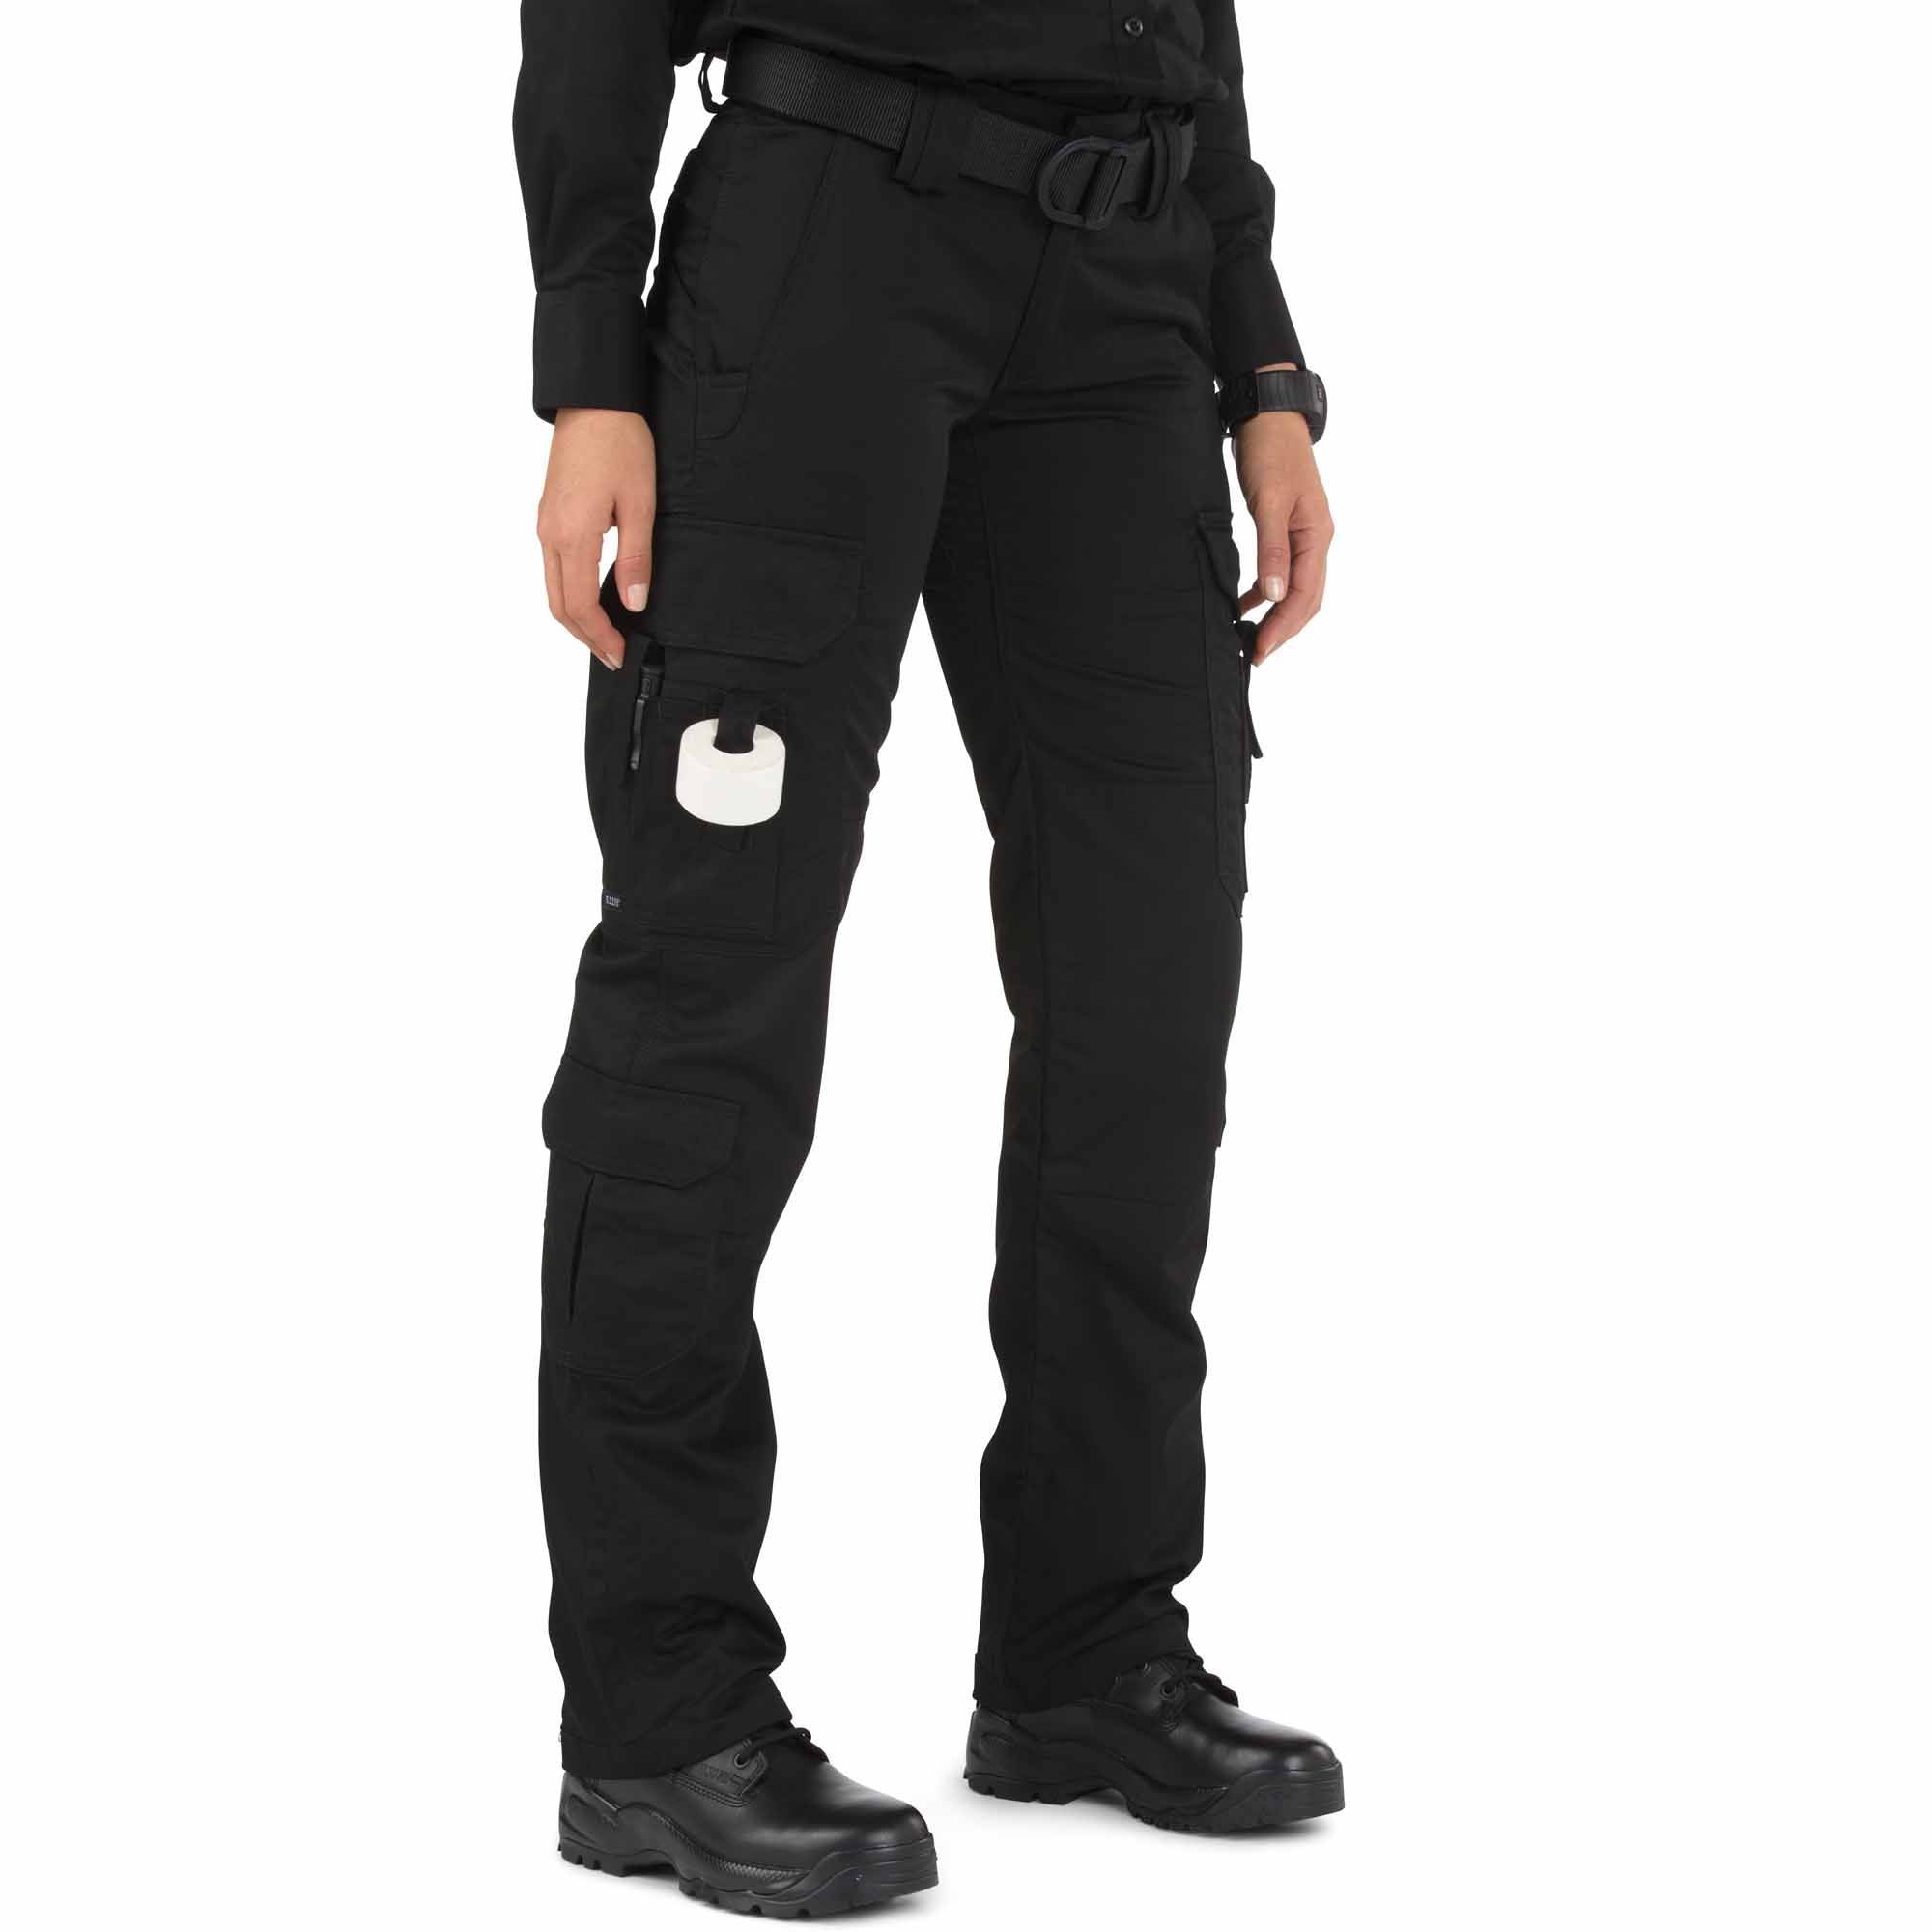 5.11 Women's TACLITE EMS Pant Black Pants 5.11 Tactical 2 Regular Tactical Gear Supplier Tactical Distributors Australia